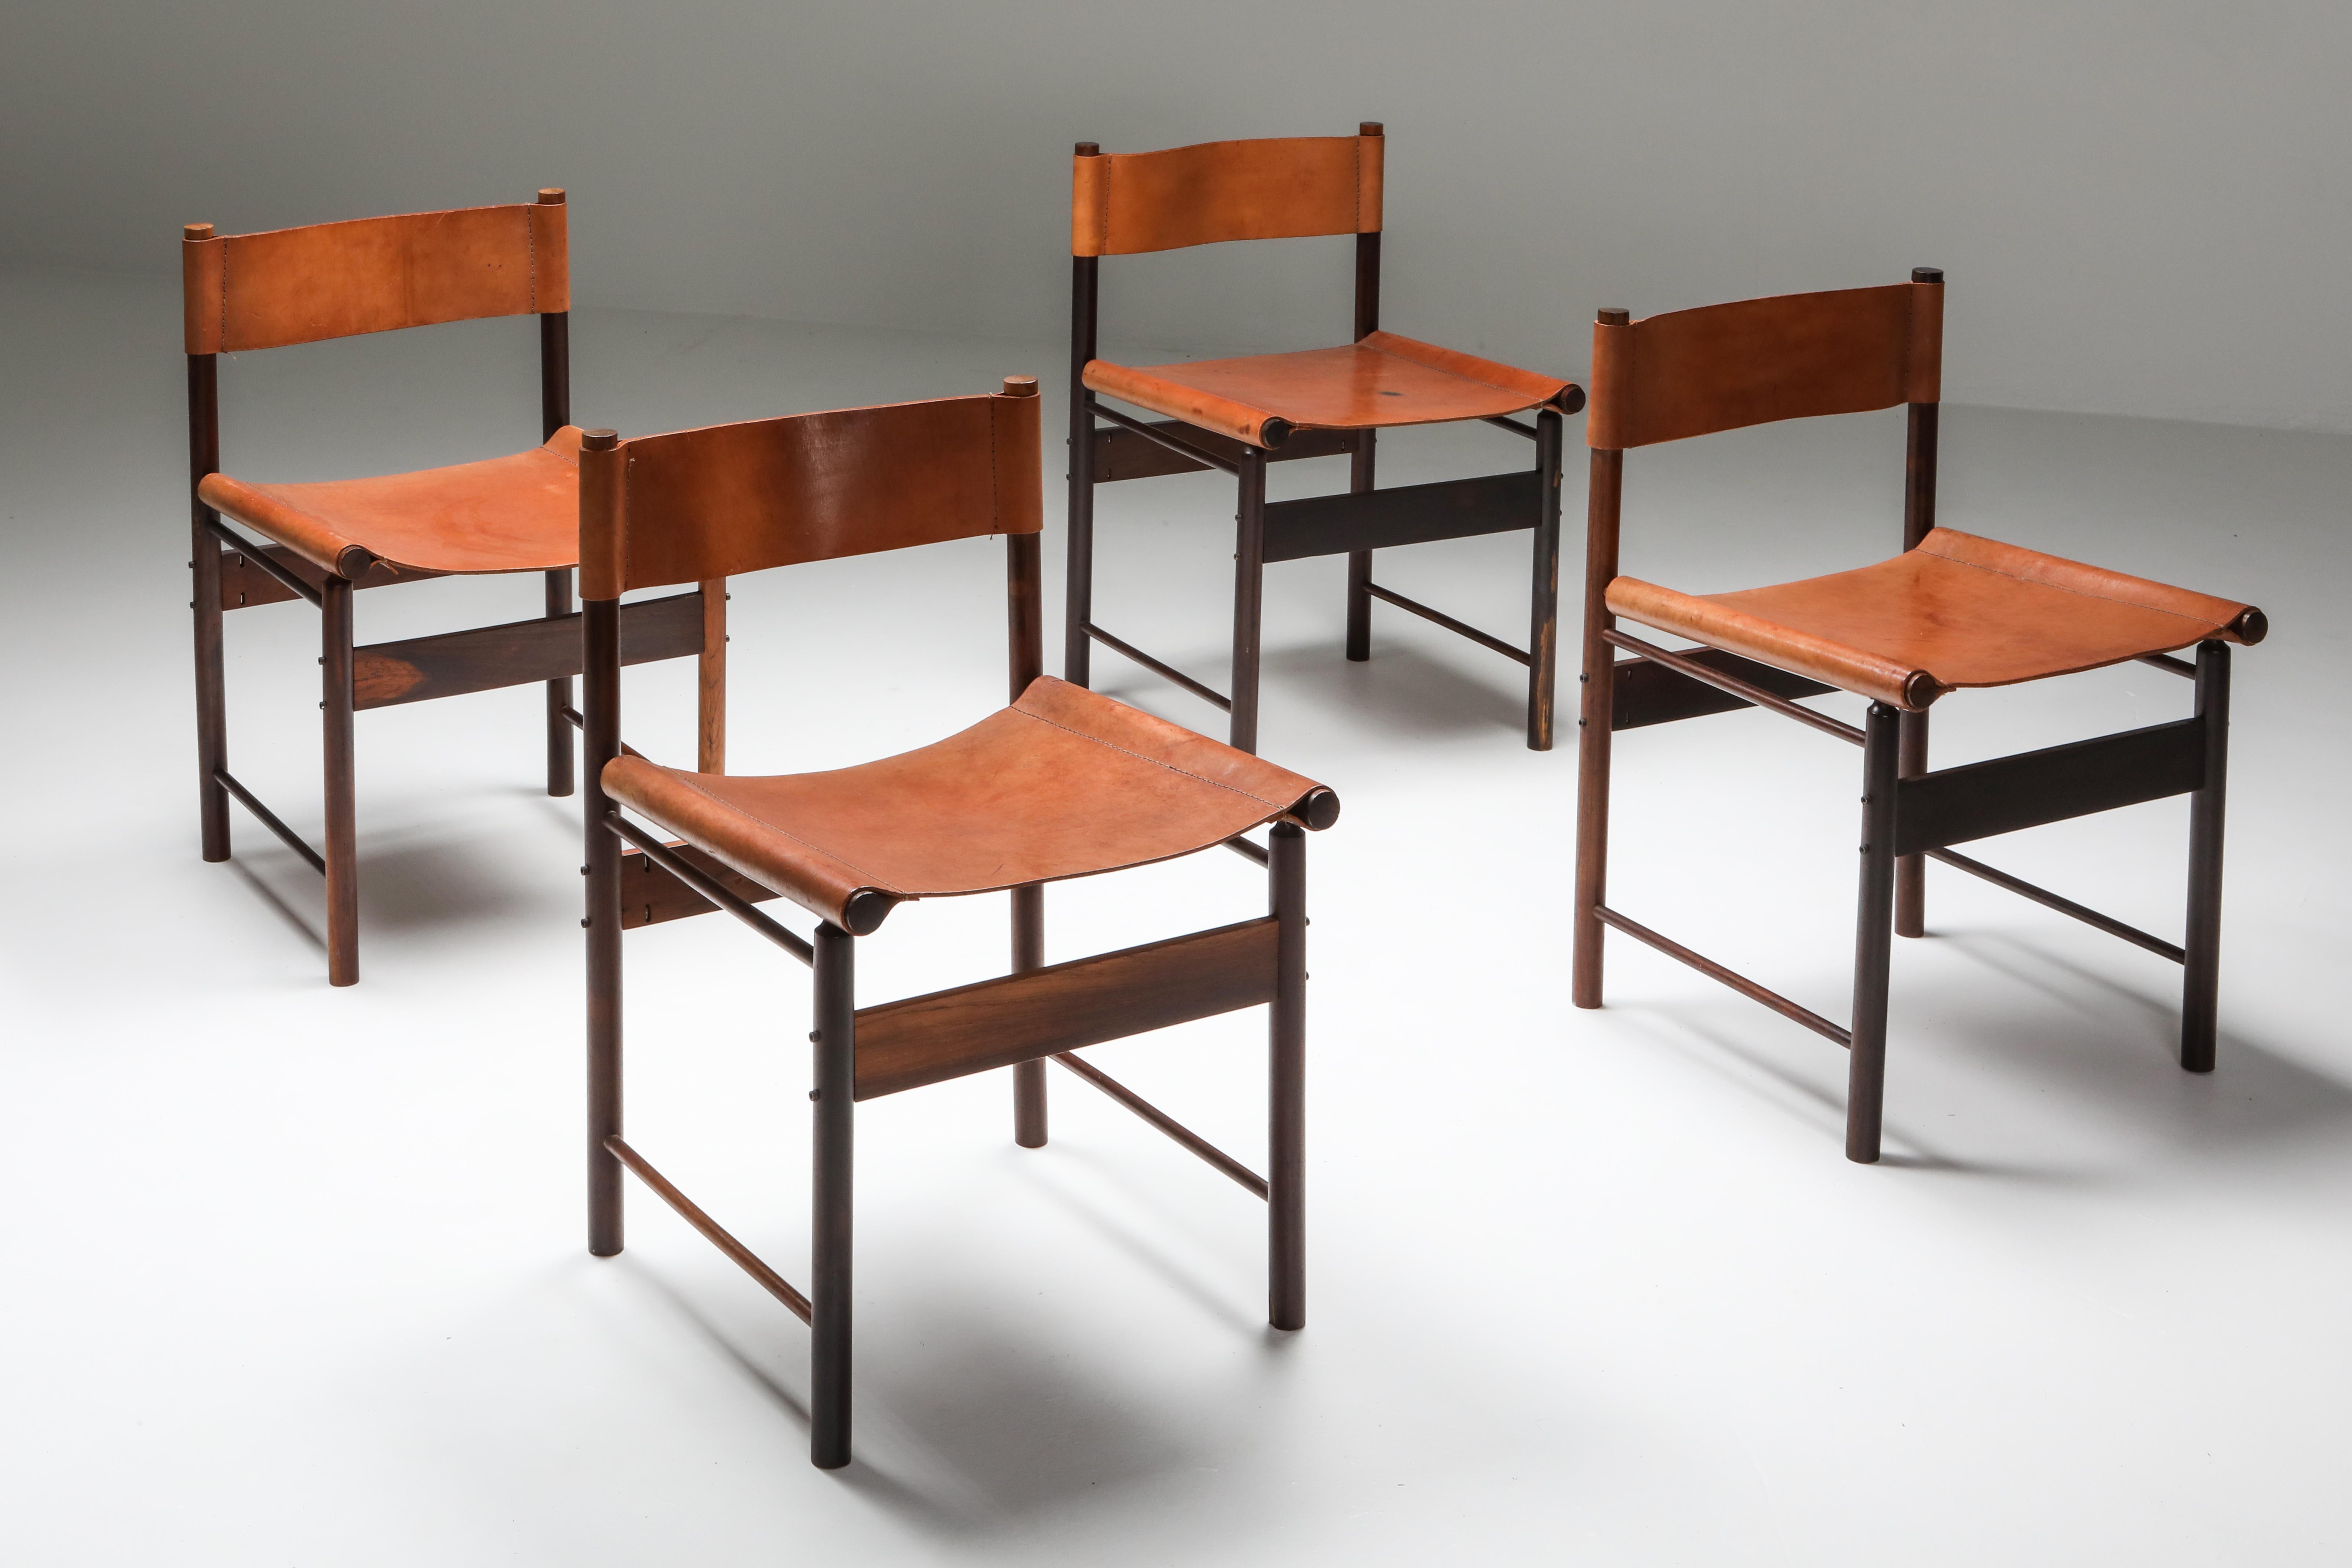 Brazilian Modern Chairs by Jorge Zalszupin 5